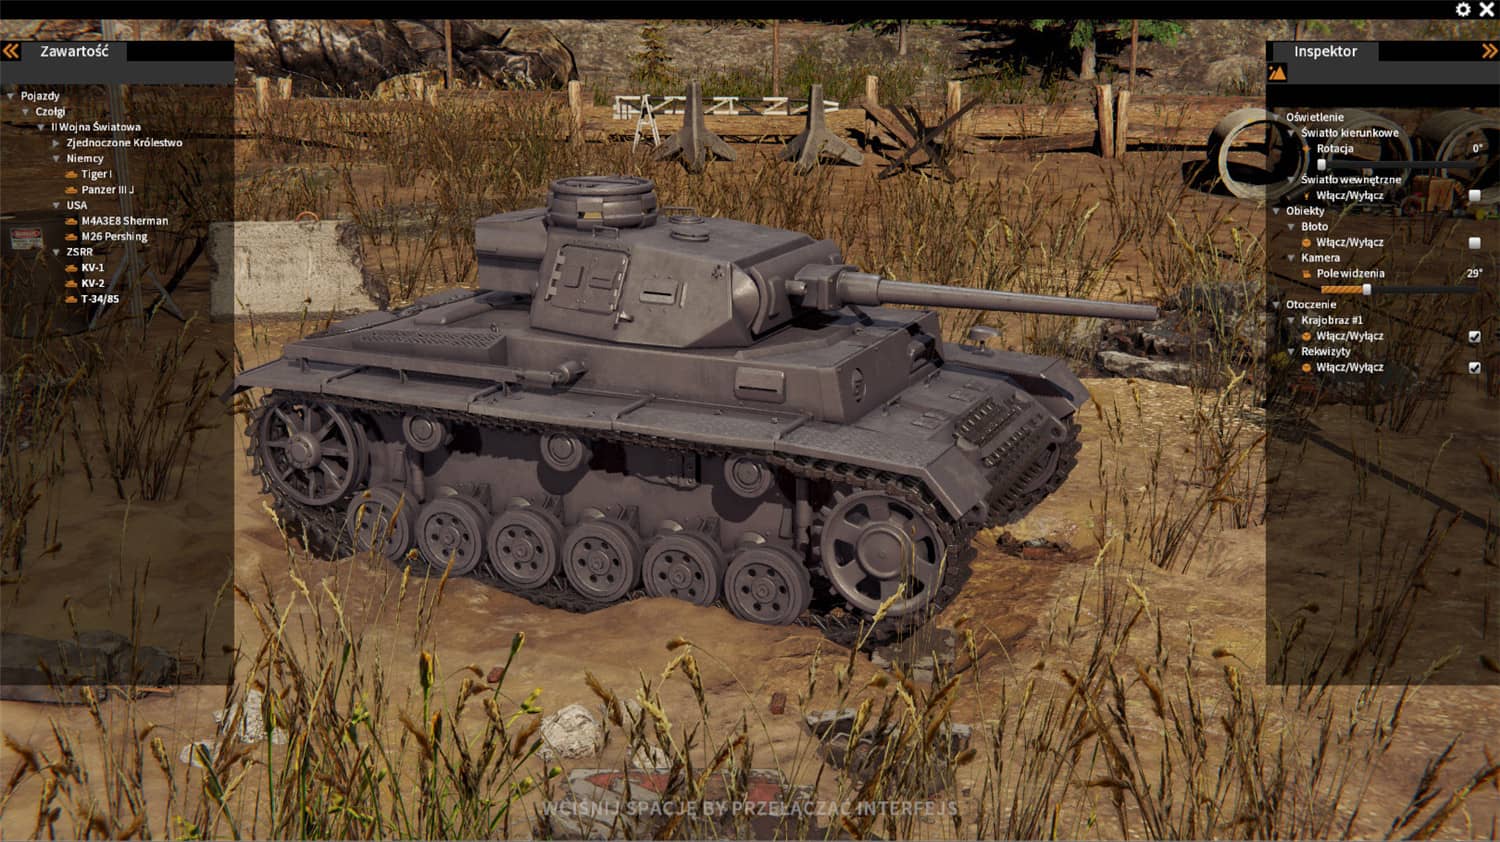 后勤模拟器/坦克维修模拟/坦克修理模拟/Tank Mechanic Simulator